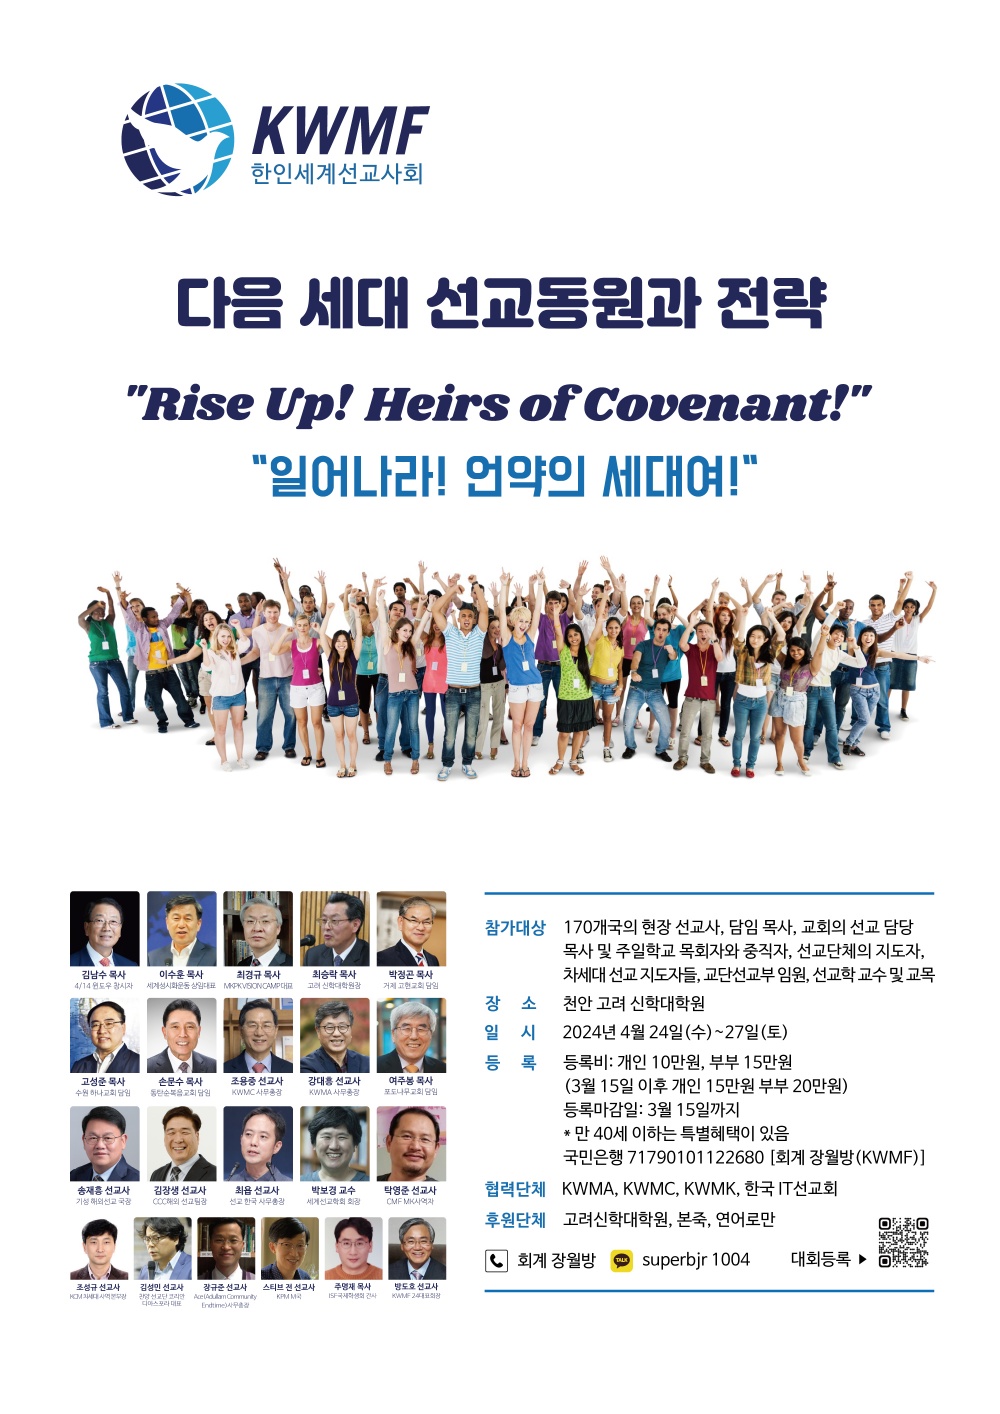 ‘한인세계선교사회(KWMF)’, 일어나라! 언약의 세대여!(Rise up! Heirs of Covenant!)’